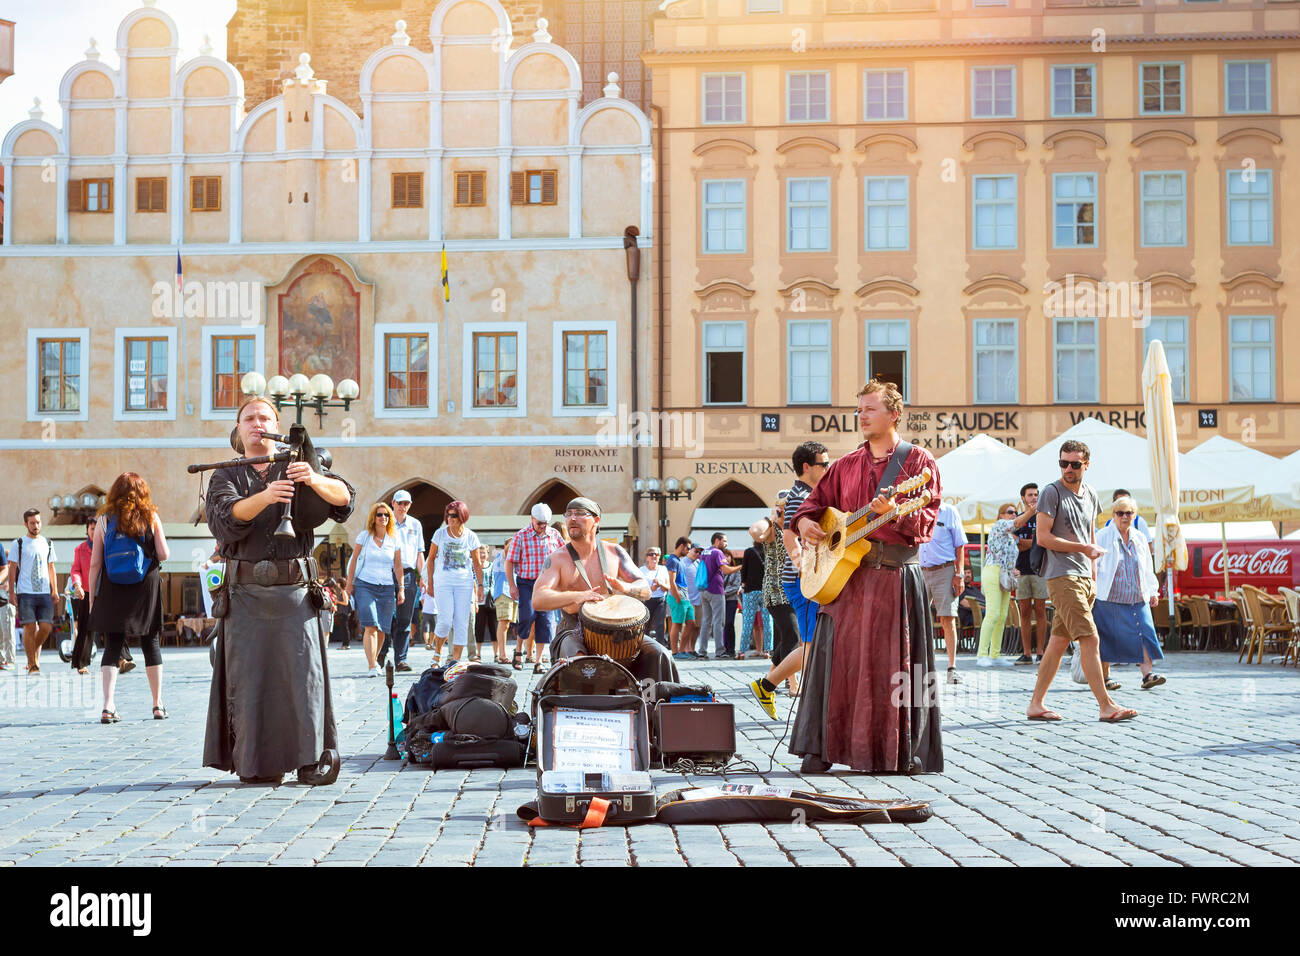 PRAGUE, RÉPUBLIQUE TCHÈQUE - 27 août 2015 : Des musiciens avec instruments folkloriques sur la place de la vieille ville, dans l'arrière-plan de la cathédrale de Tyn Banque D'Images